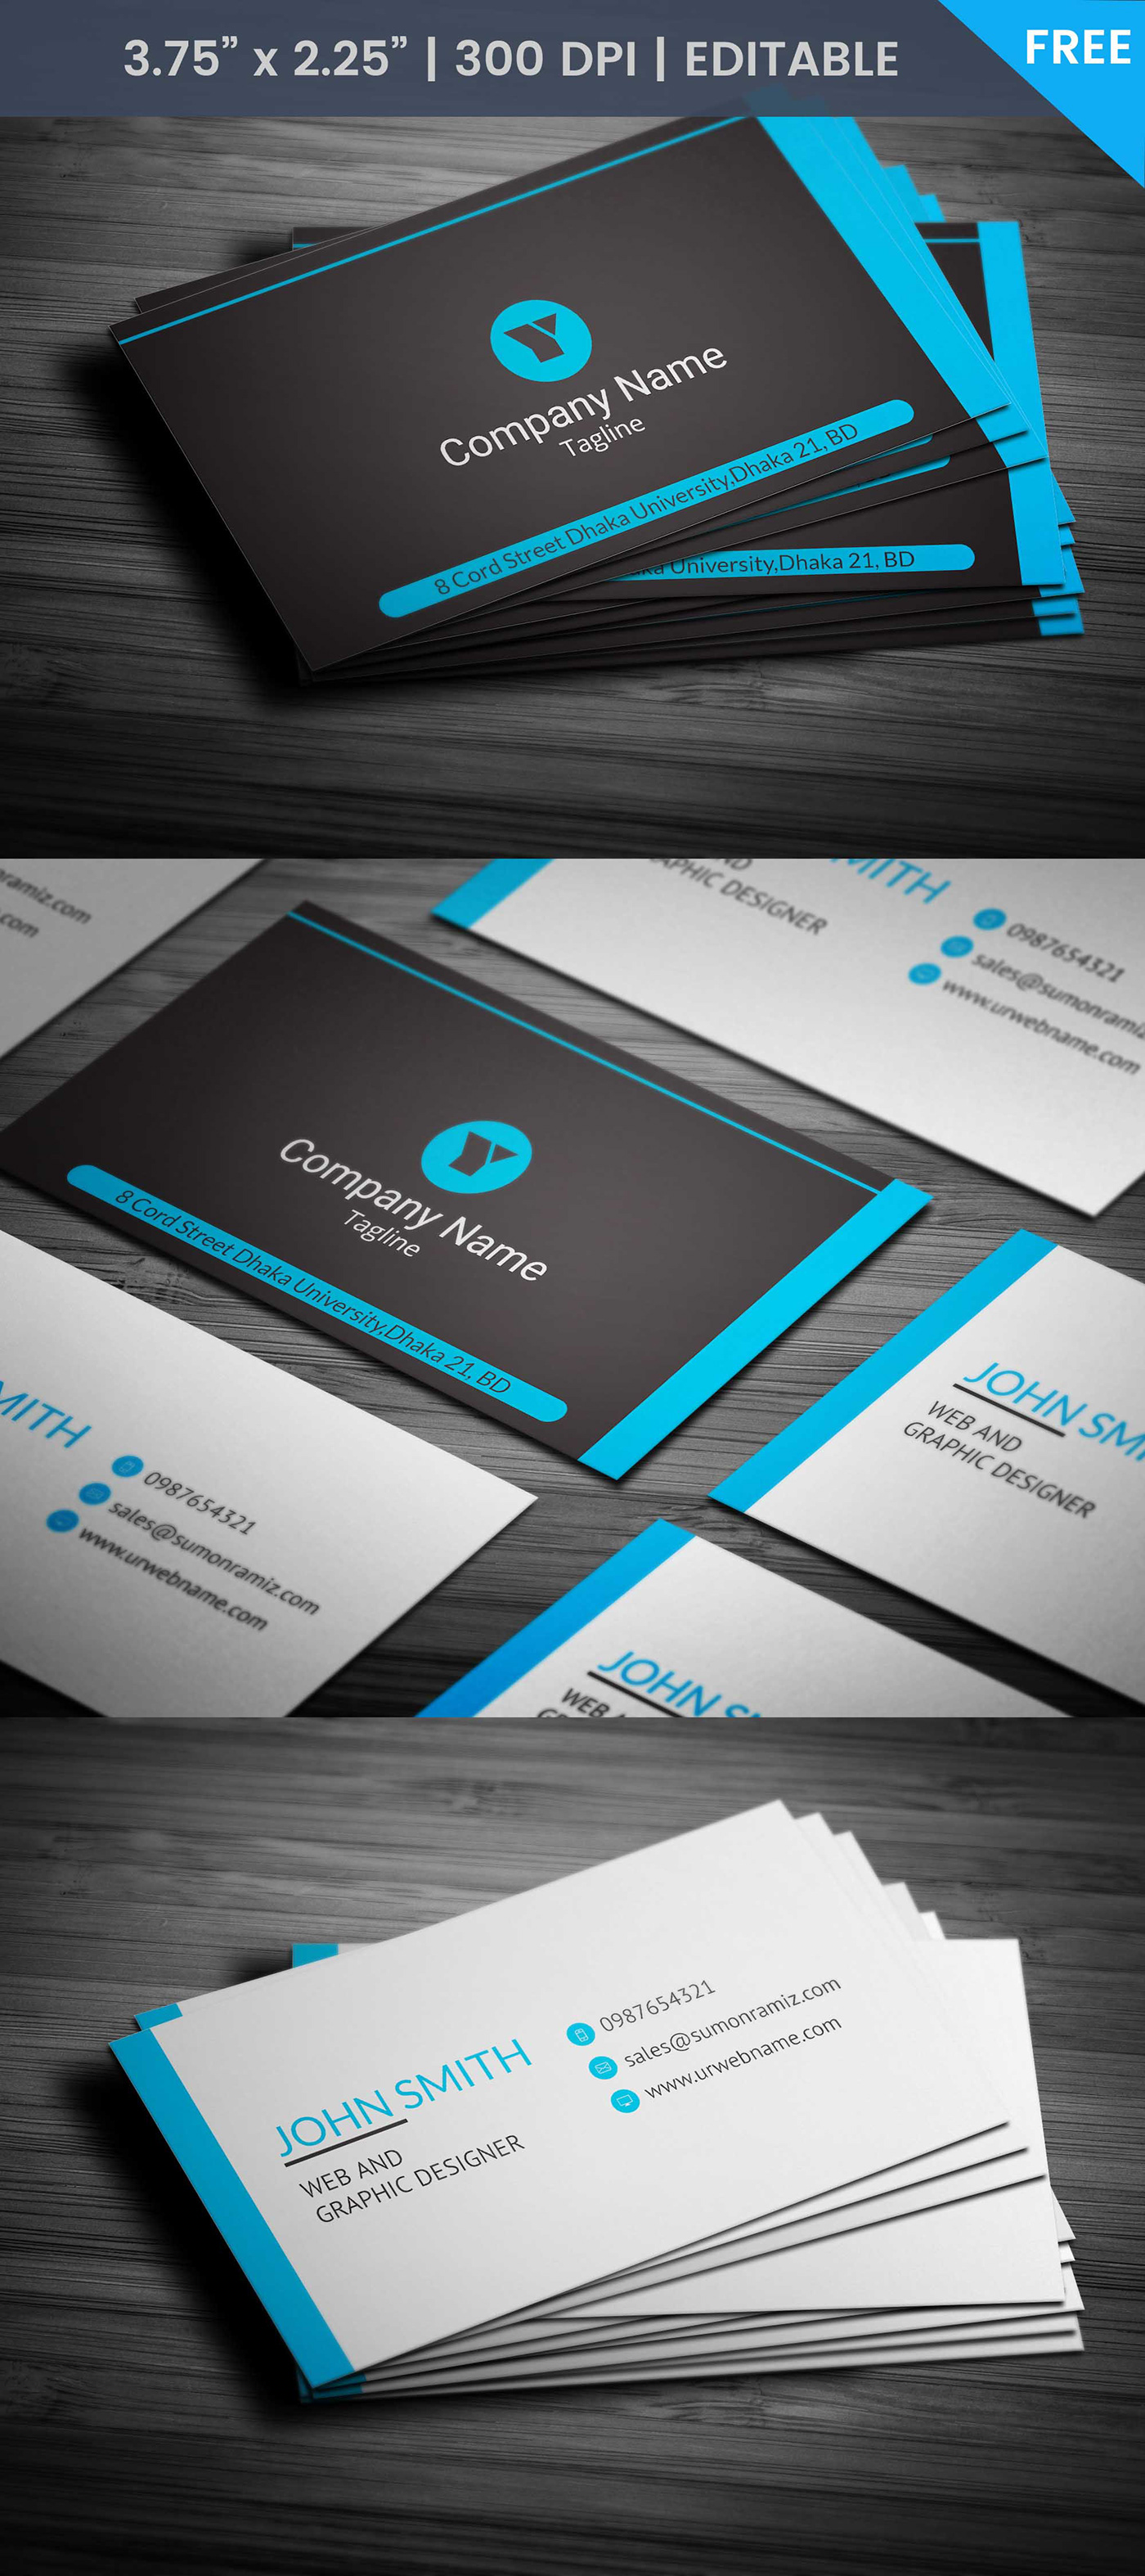 Web designer business card web designer business card business card template